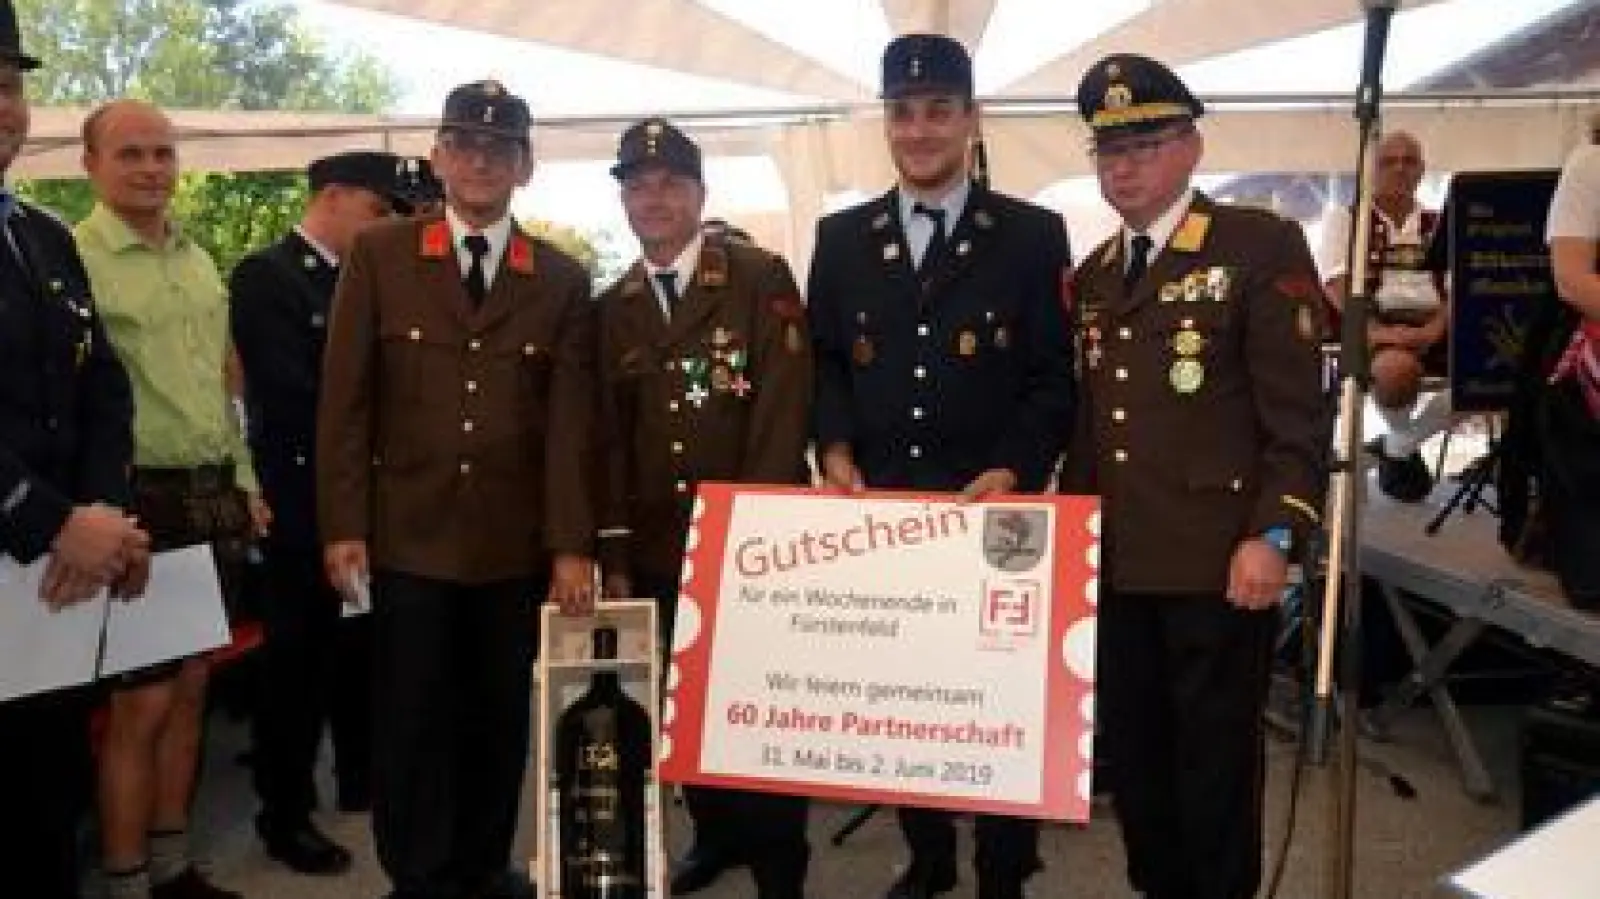 Die Feuerwehr Fürstenfeld   überreichte einen Gutschein für das Jubiläum im kommenden Jahr.